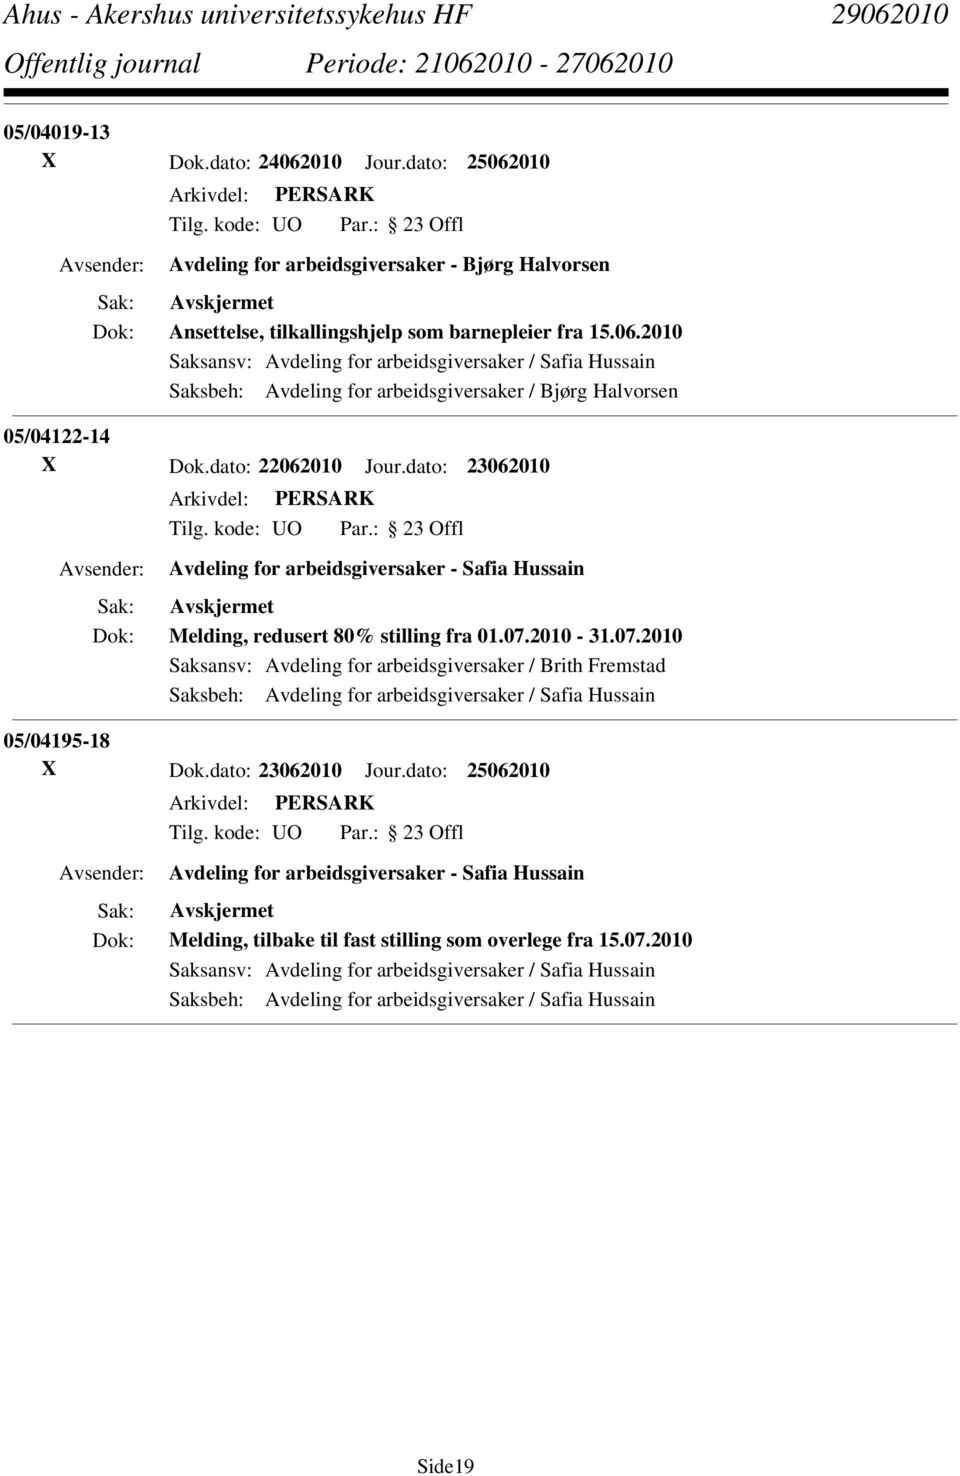 2010-31.07.2010 Saksansv: Avdeling for arbeidsgiversaker / Brith Fremstad Saksbeh: Avdeling for arbeidsgiversaker / Safia Hussain 05/04195-18 X Dok.dato: 23062010 Jour.